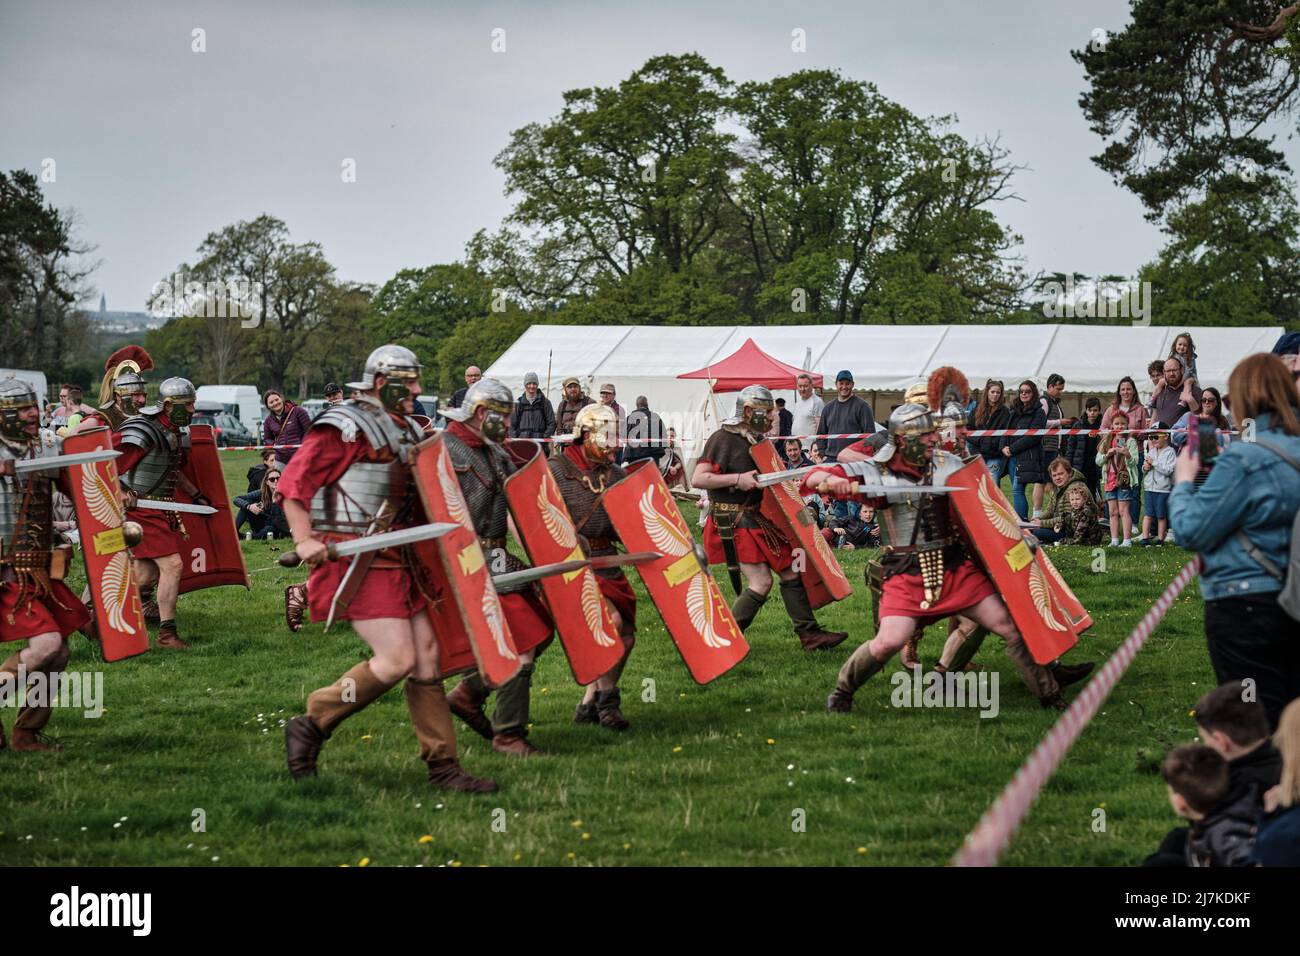 Les légionnaires romains de la Légion VIII chargent des spectateurs dans l'arène lors de l'événement No Man's Land à Bodrhyddan Hall, pays de Galles Banque D'Images